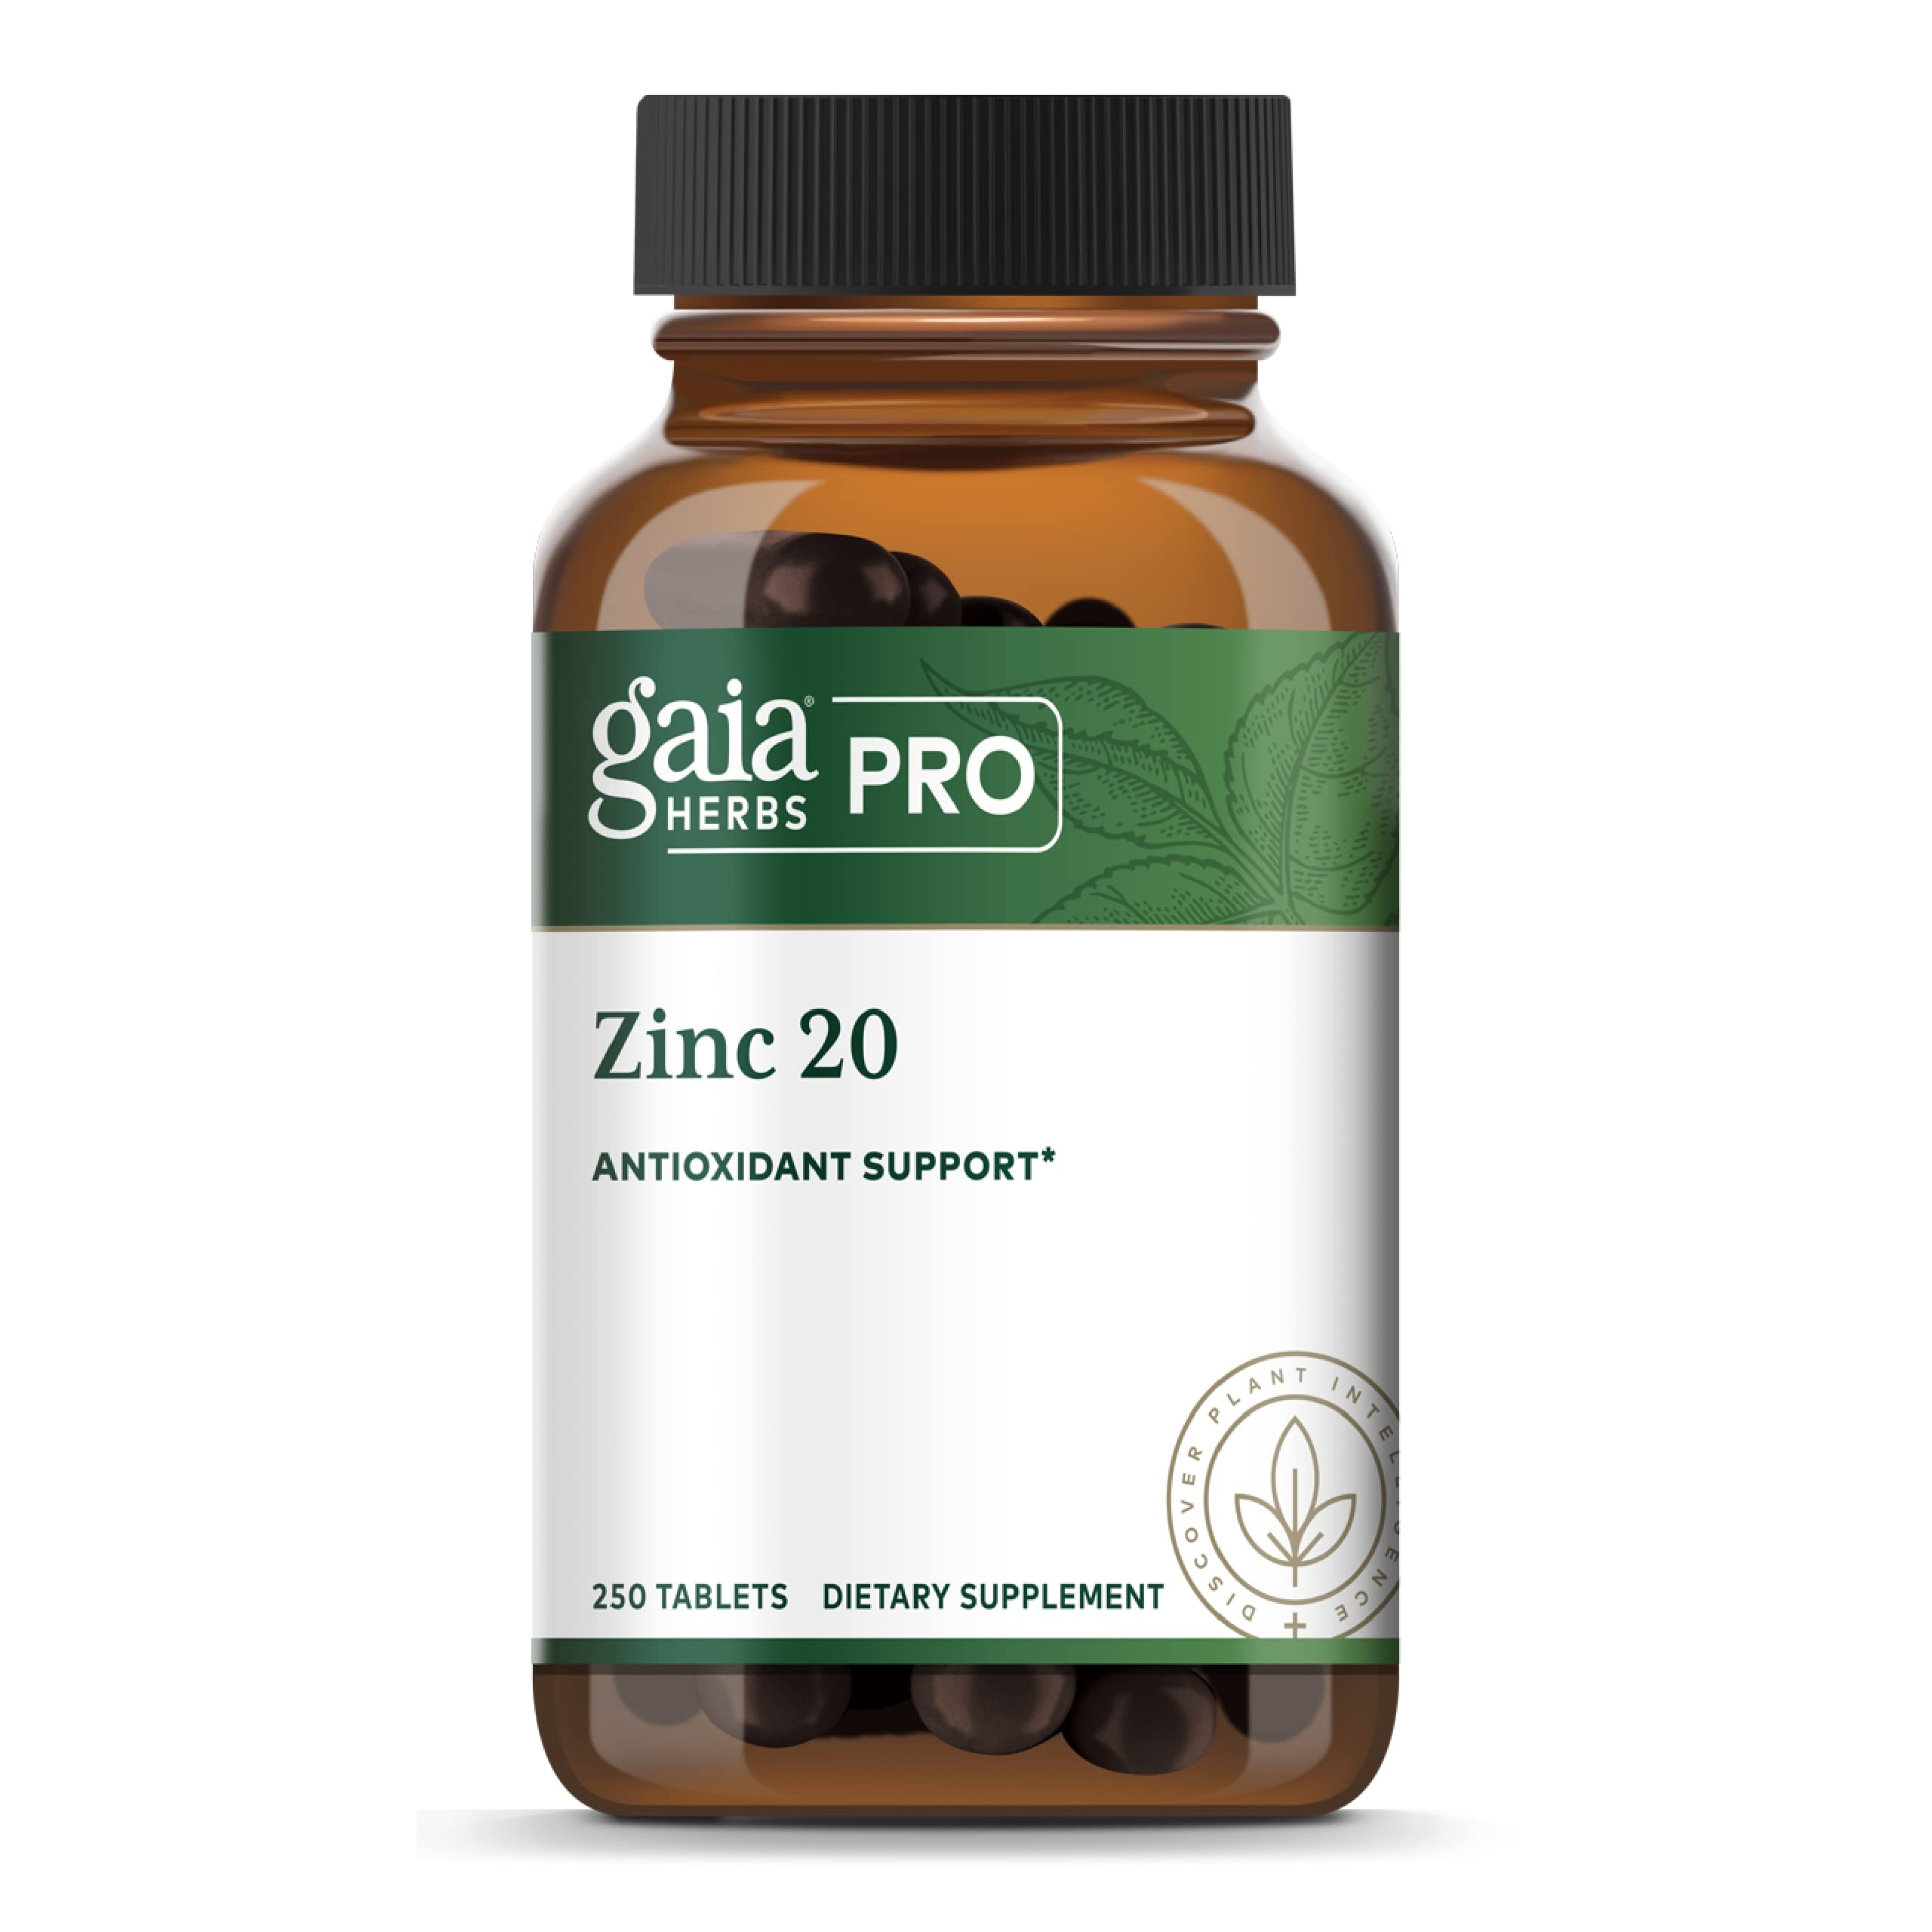 Gaia PRO Zinc 20 - Immune & Antioxidant Support Supplement - with Zinc Monomethionine - 20mg Zinc Supplement - 250 Tablets (250 Servings)